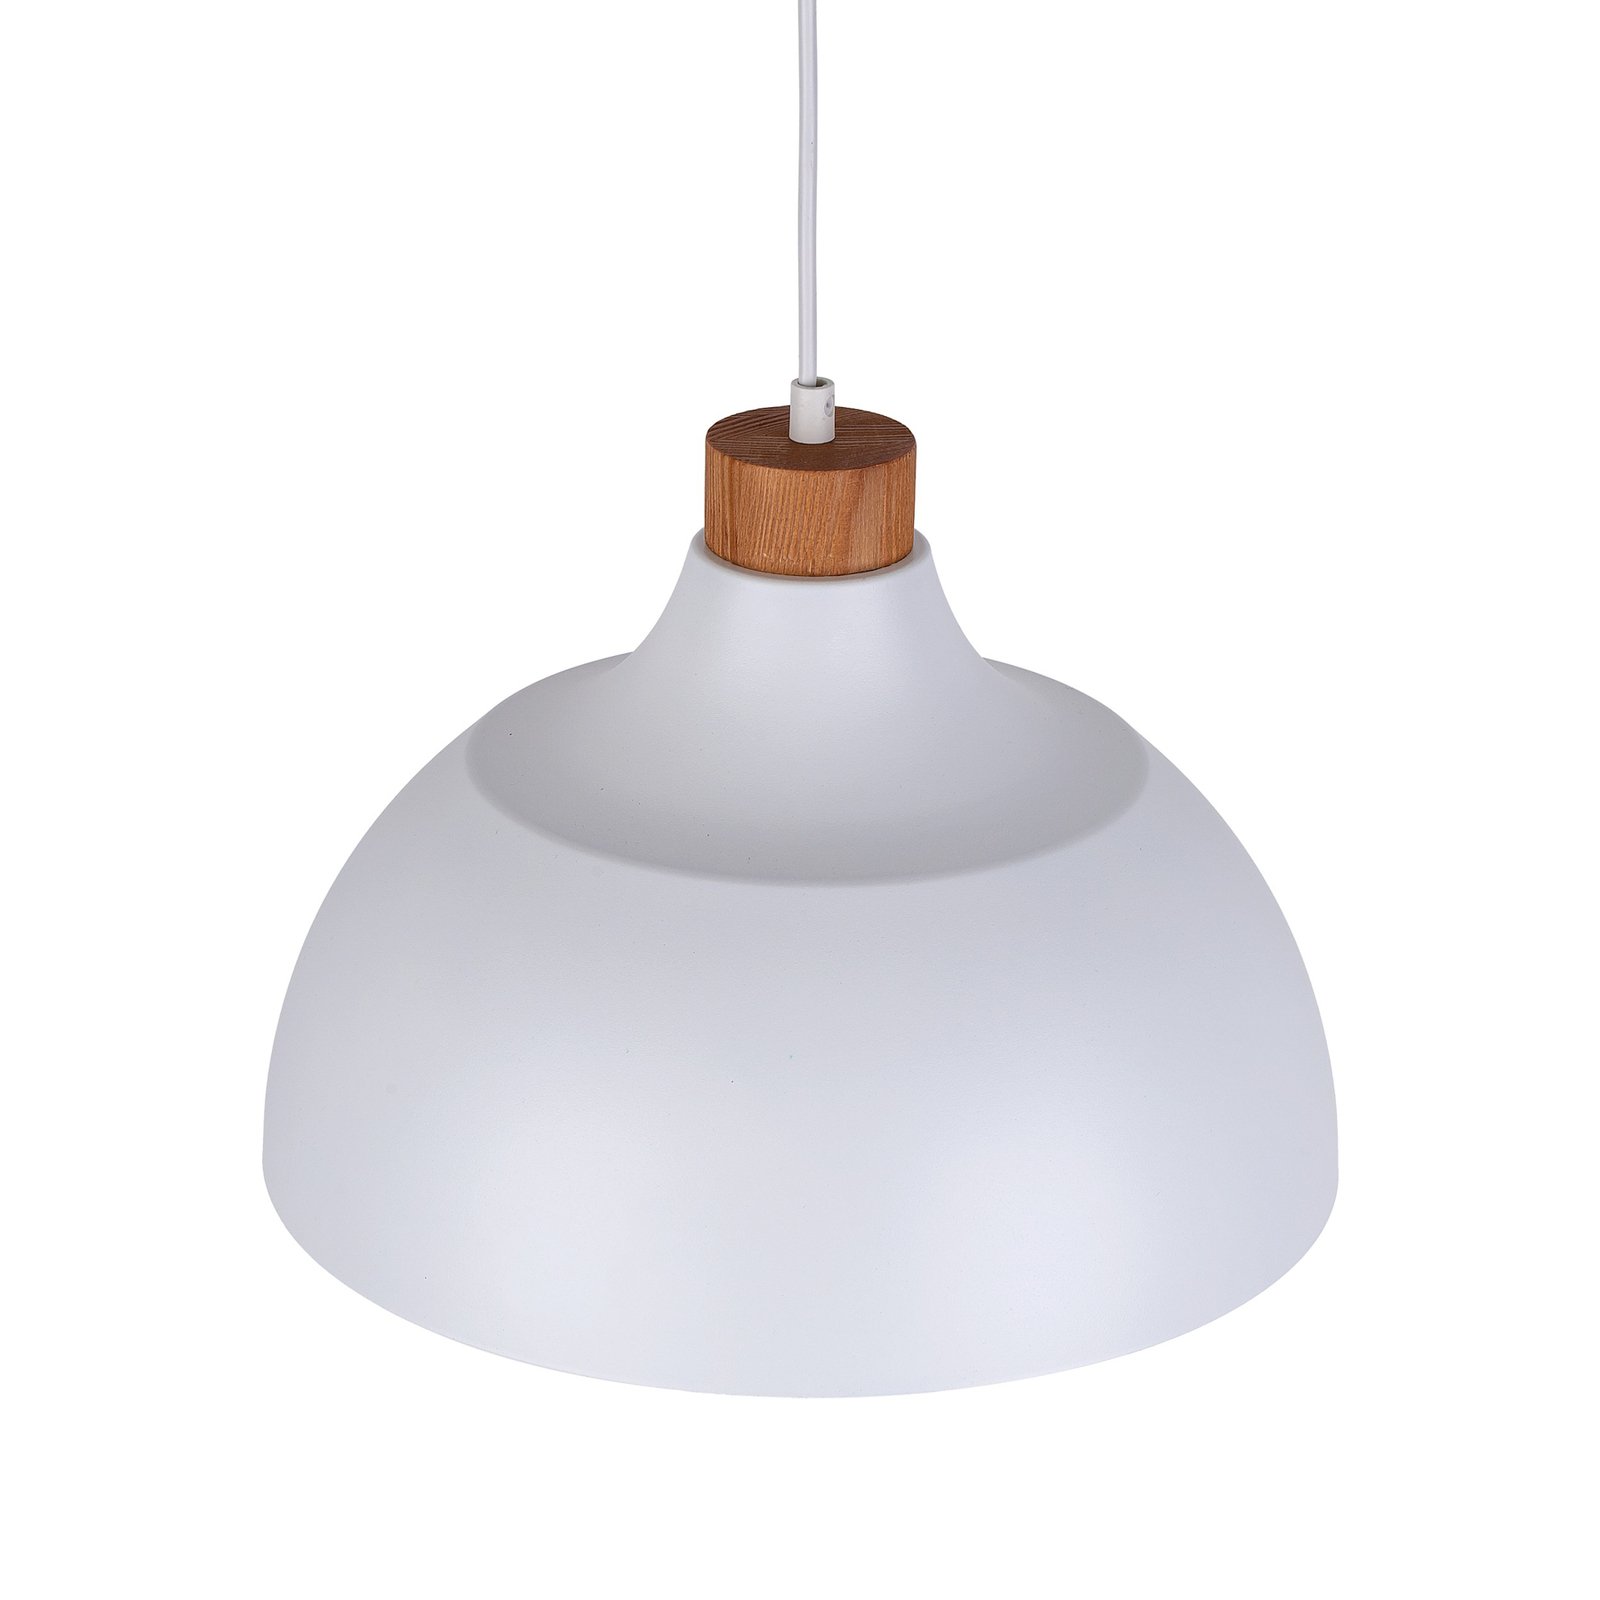 Envostar hanglamp Kaitt, houtdetail, Ø 34 cm, wit